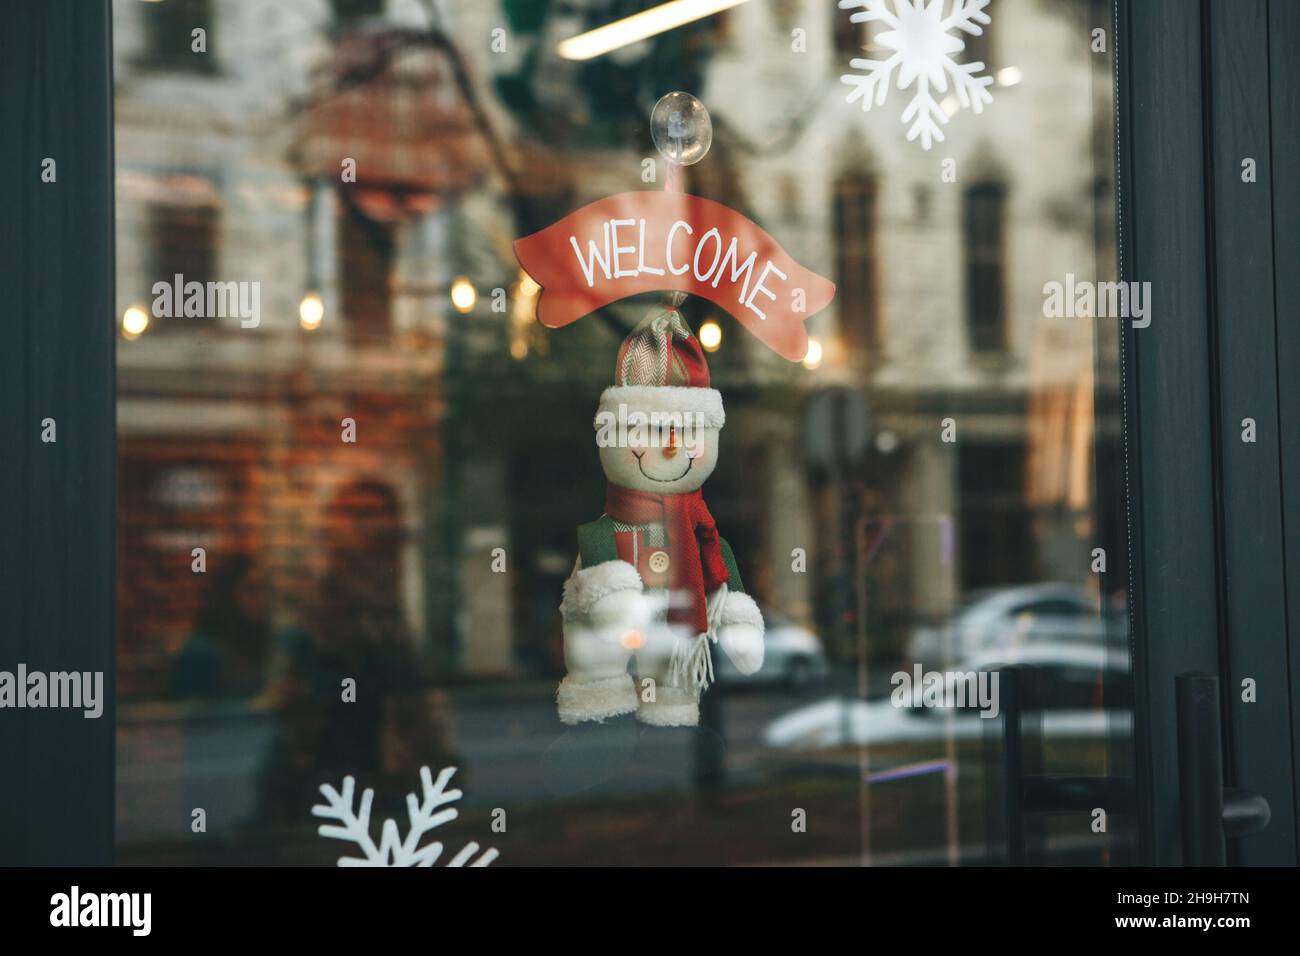 Decoración navideña en la puerta del café con la inscripción Bienvenido. Celebración de Navidad, Año Nuevo y concepto festivo. Foto de stock